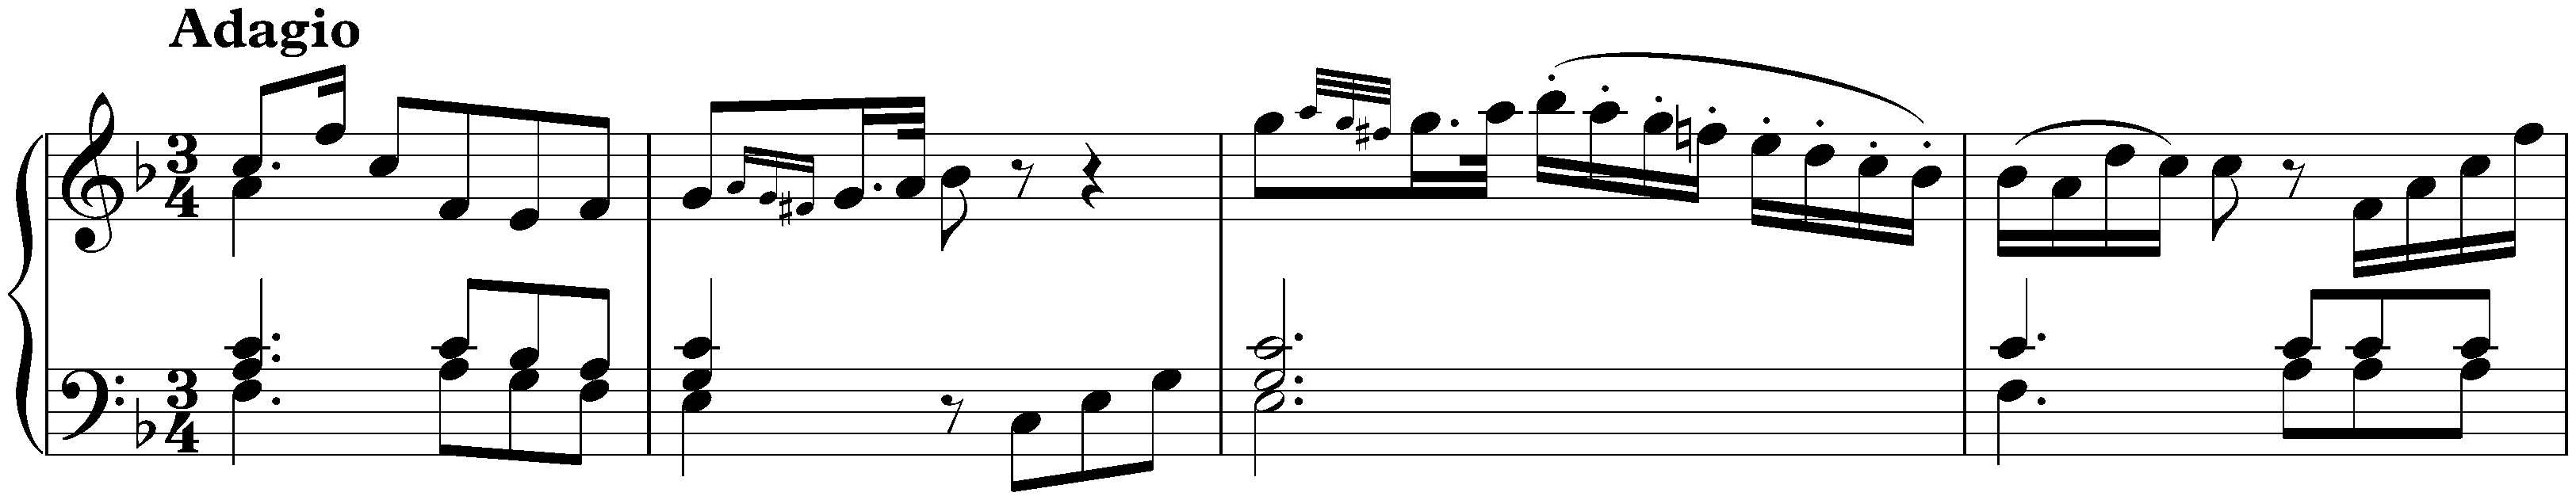 Adagio in F major, Hob. XVII:9*